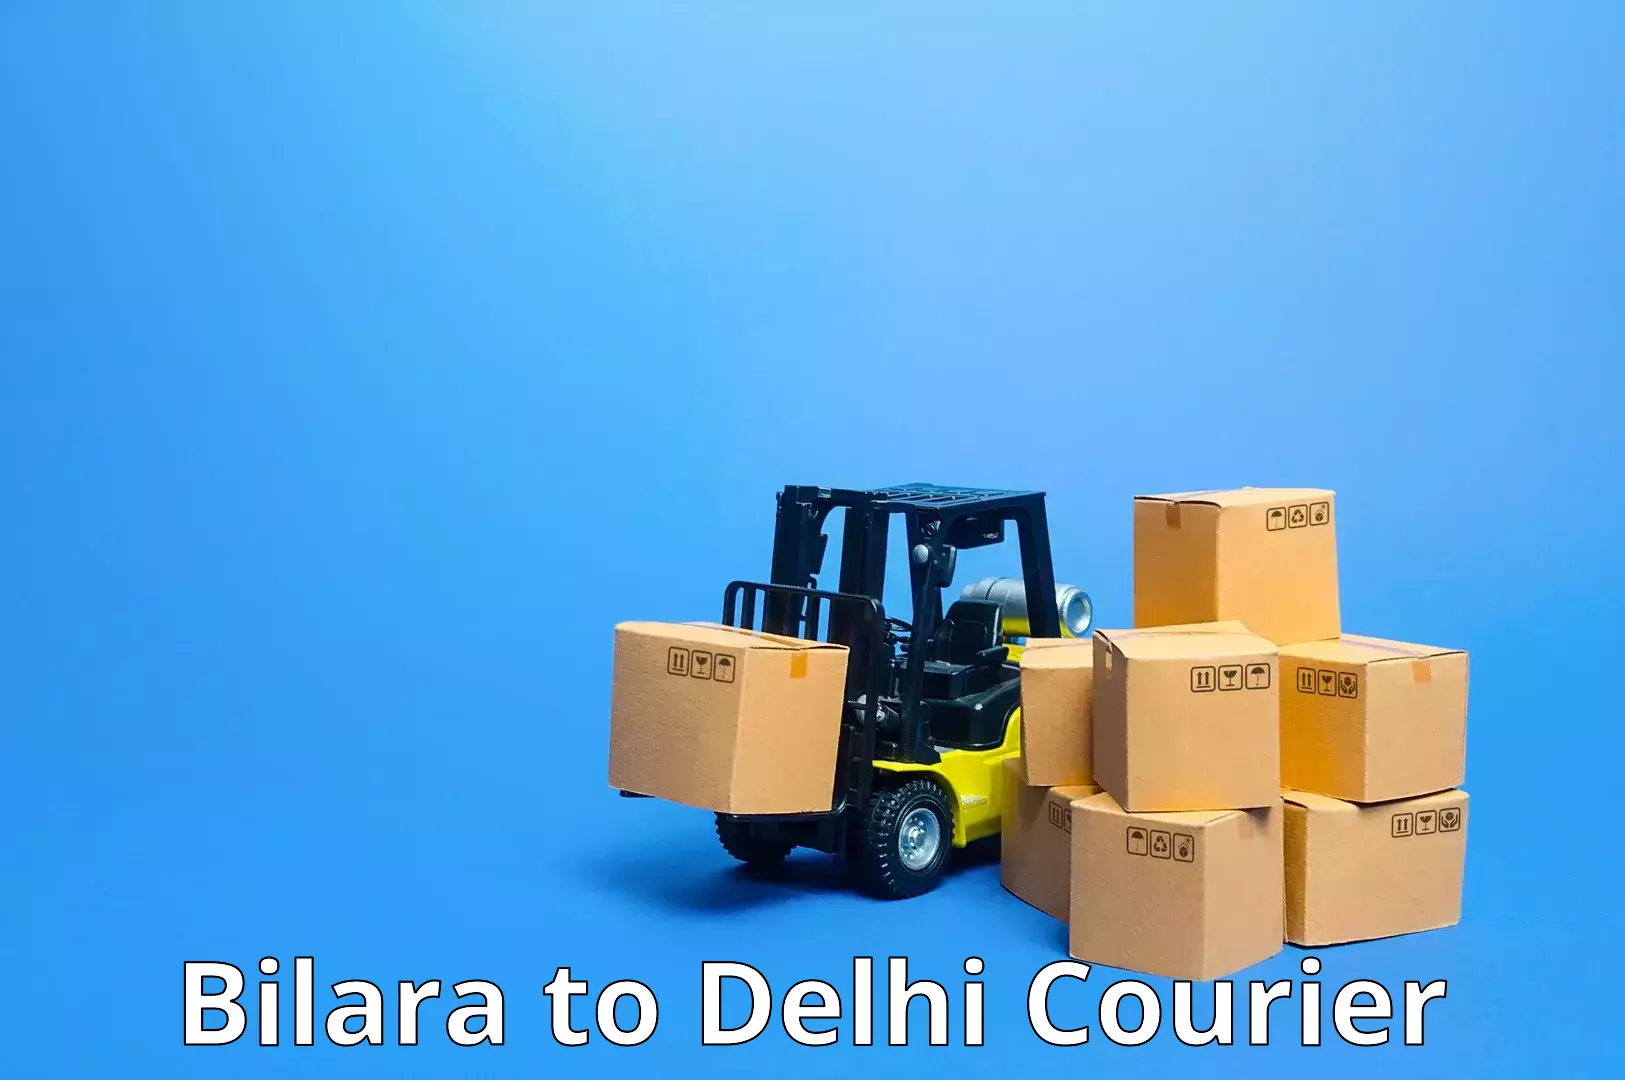 Scheduled delivery in Bilara to Delhi